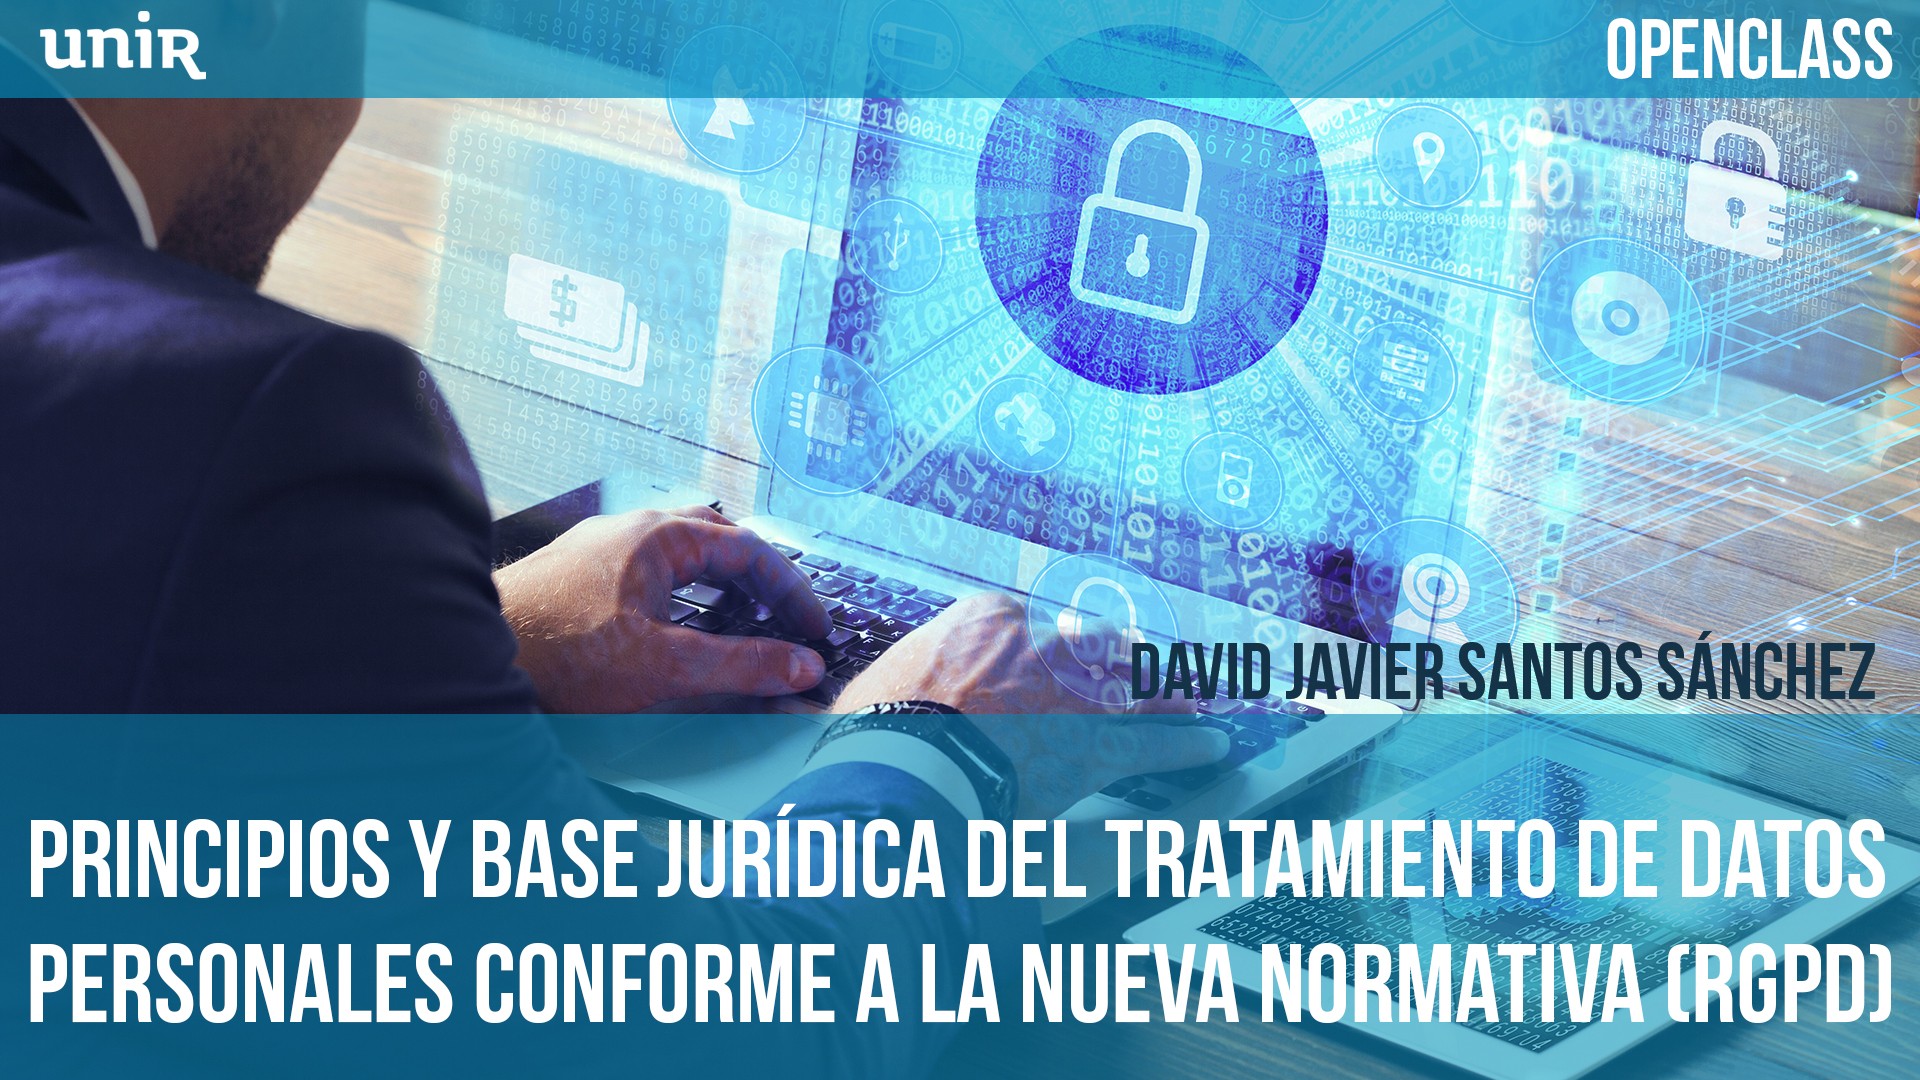 Principios y base jurídica del tratamiento de datos personales conforme a la nueva normativa (RGPD)